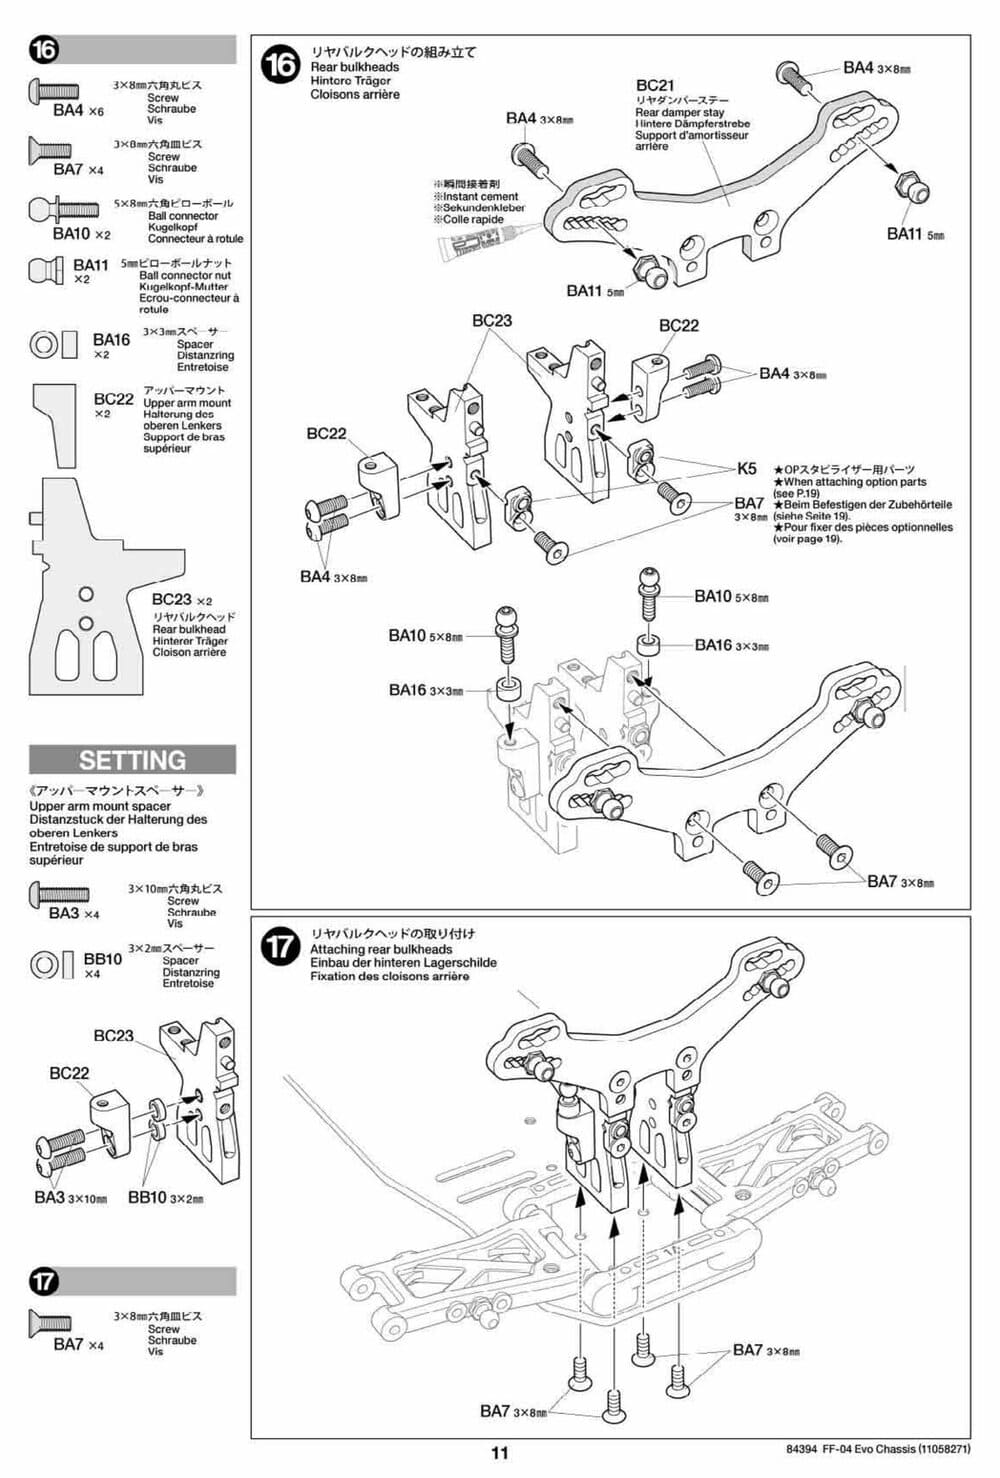 Tamiya - FF-04 Evo Chassis - Manual - Page 11